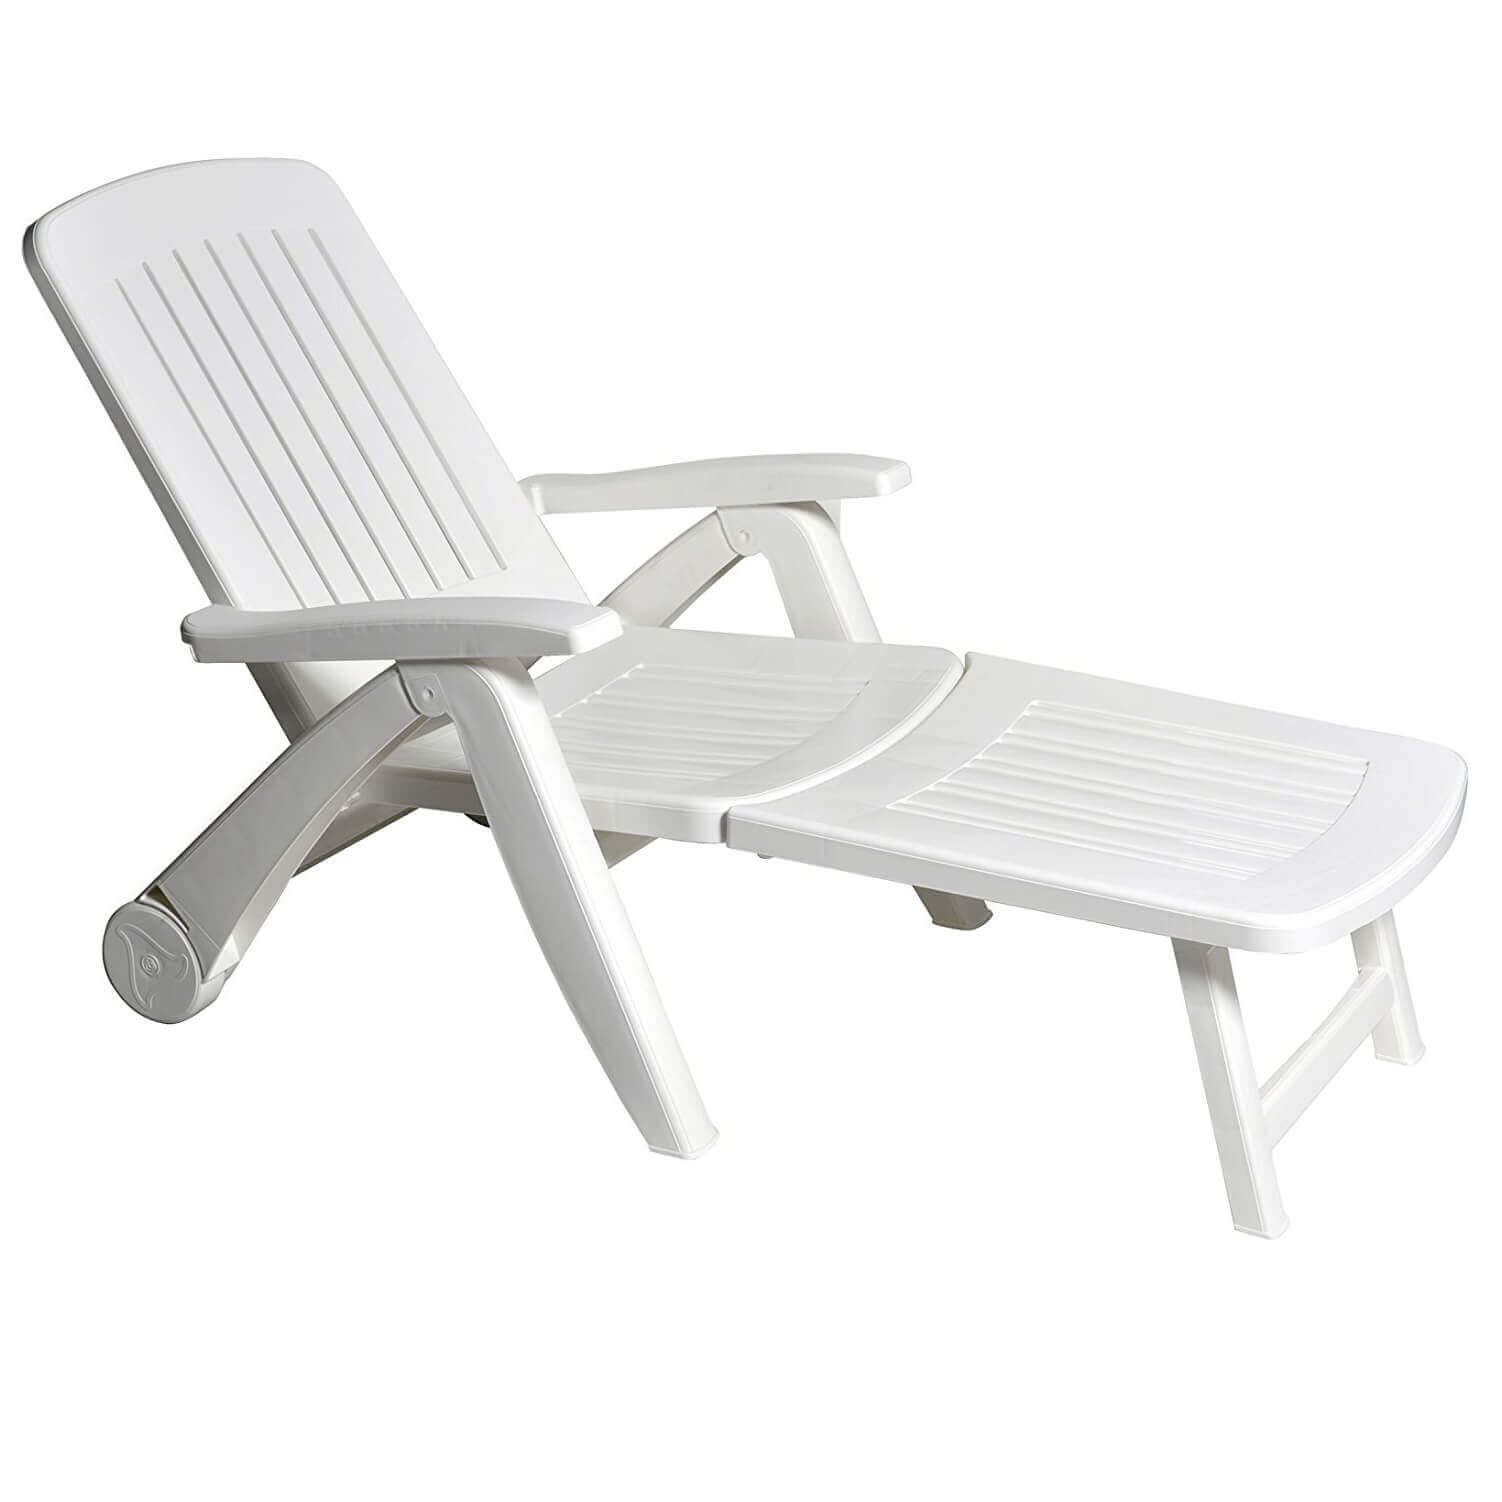 SDRAIO sedia da giardino lettino prendisole lettino da spiaggia campeggio lettino lettino da giardino sedia 